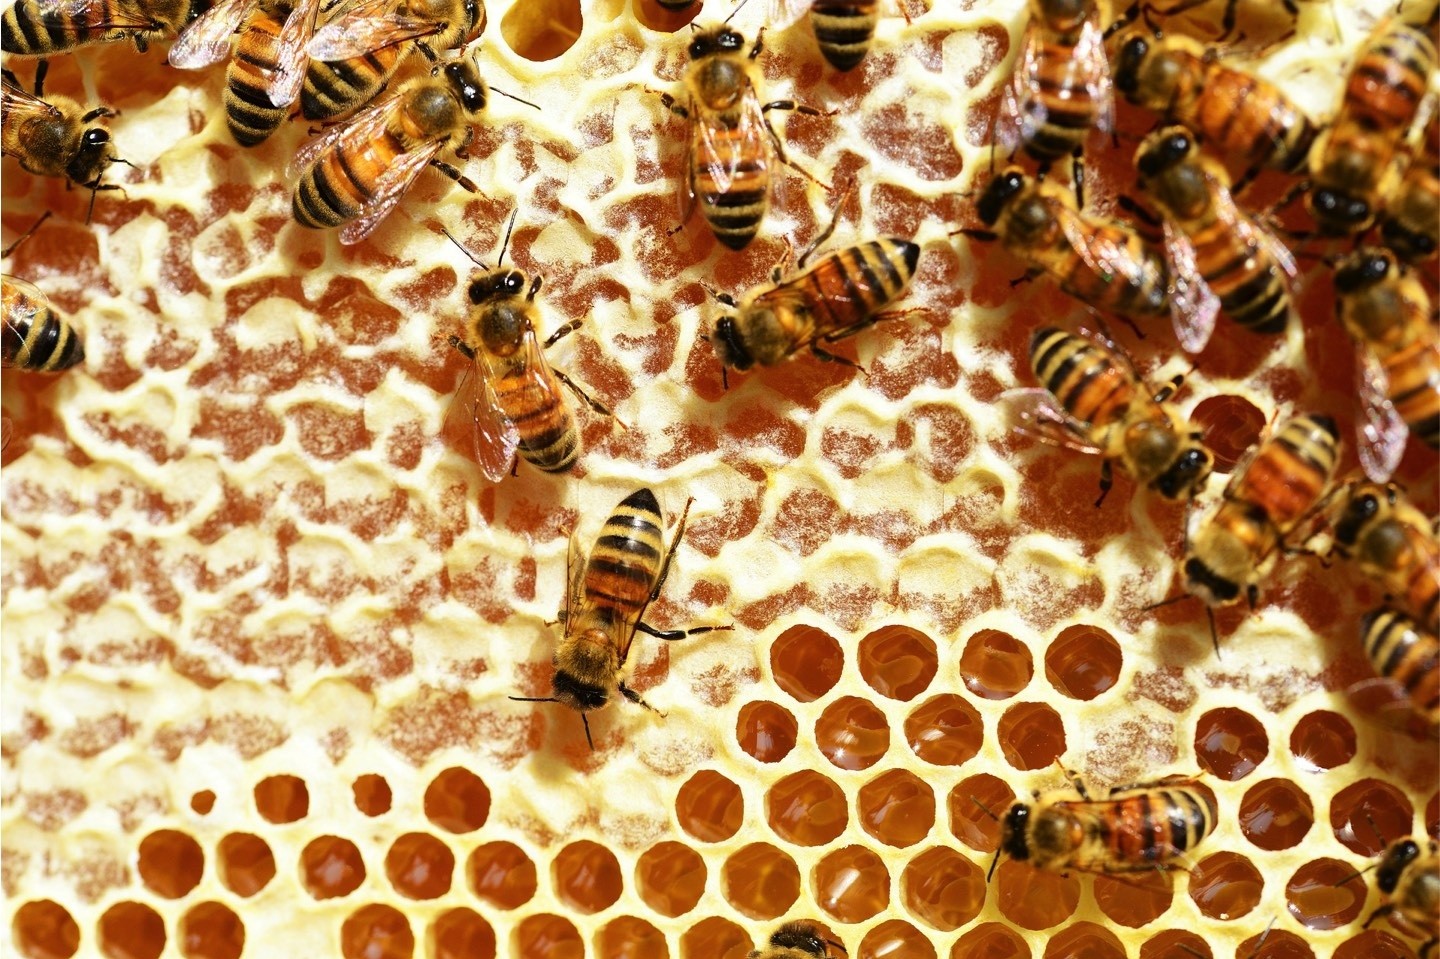 Amerikanische Faulbrut,Bienen,Kreis Warendorf,ungefährlich,